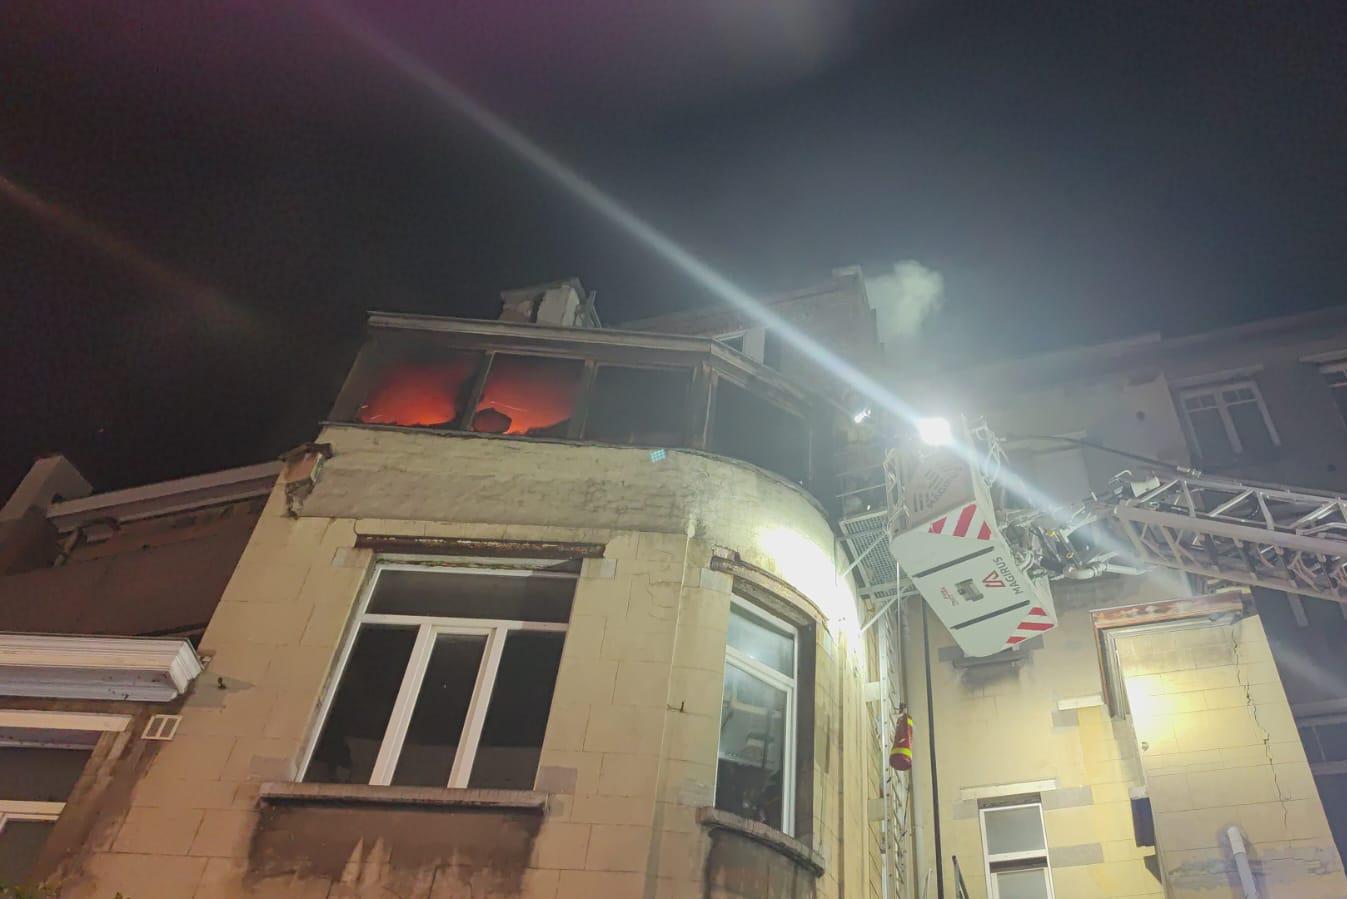 Hevige brand in hotel: hele verdieping vernield